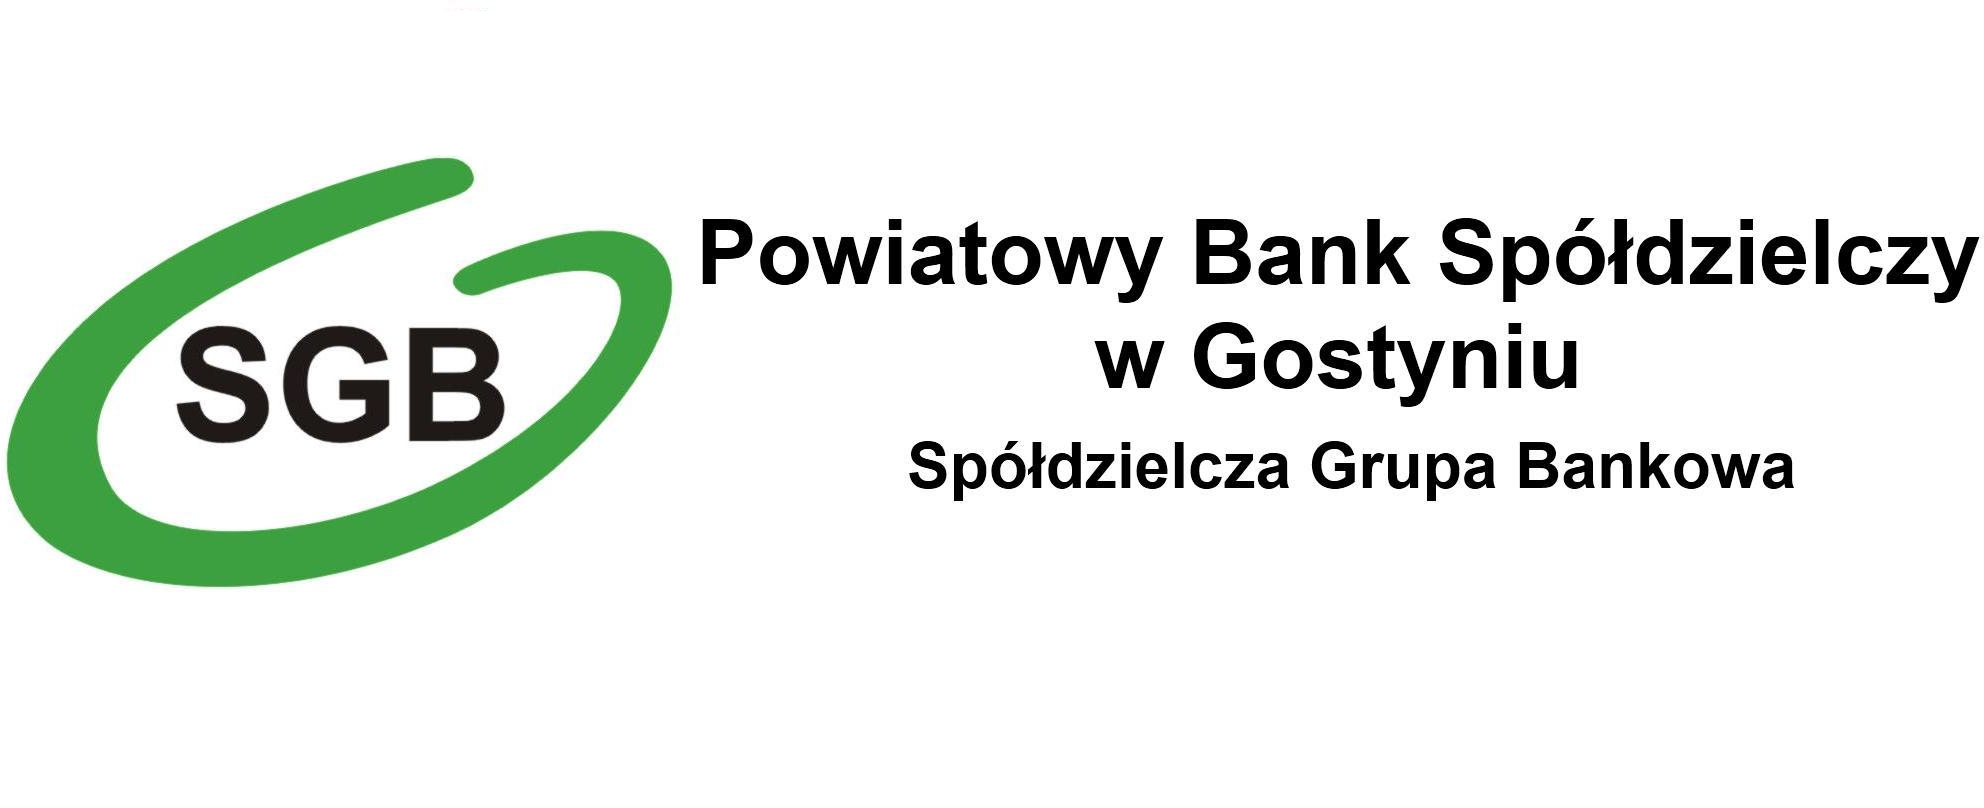 Płać kartą Visa i wygrywaj nagrody w loterii - Powiatowy Bank Spółdzielczy w Gostyniu